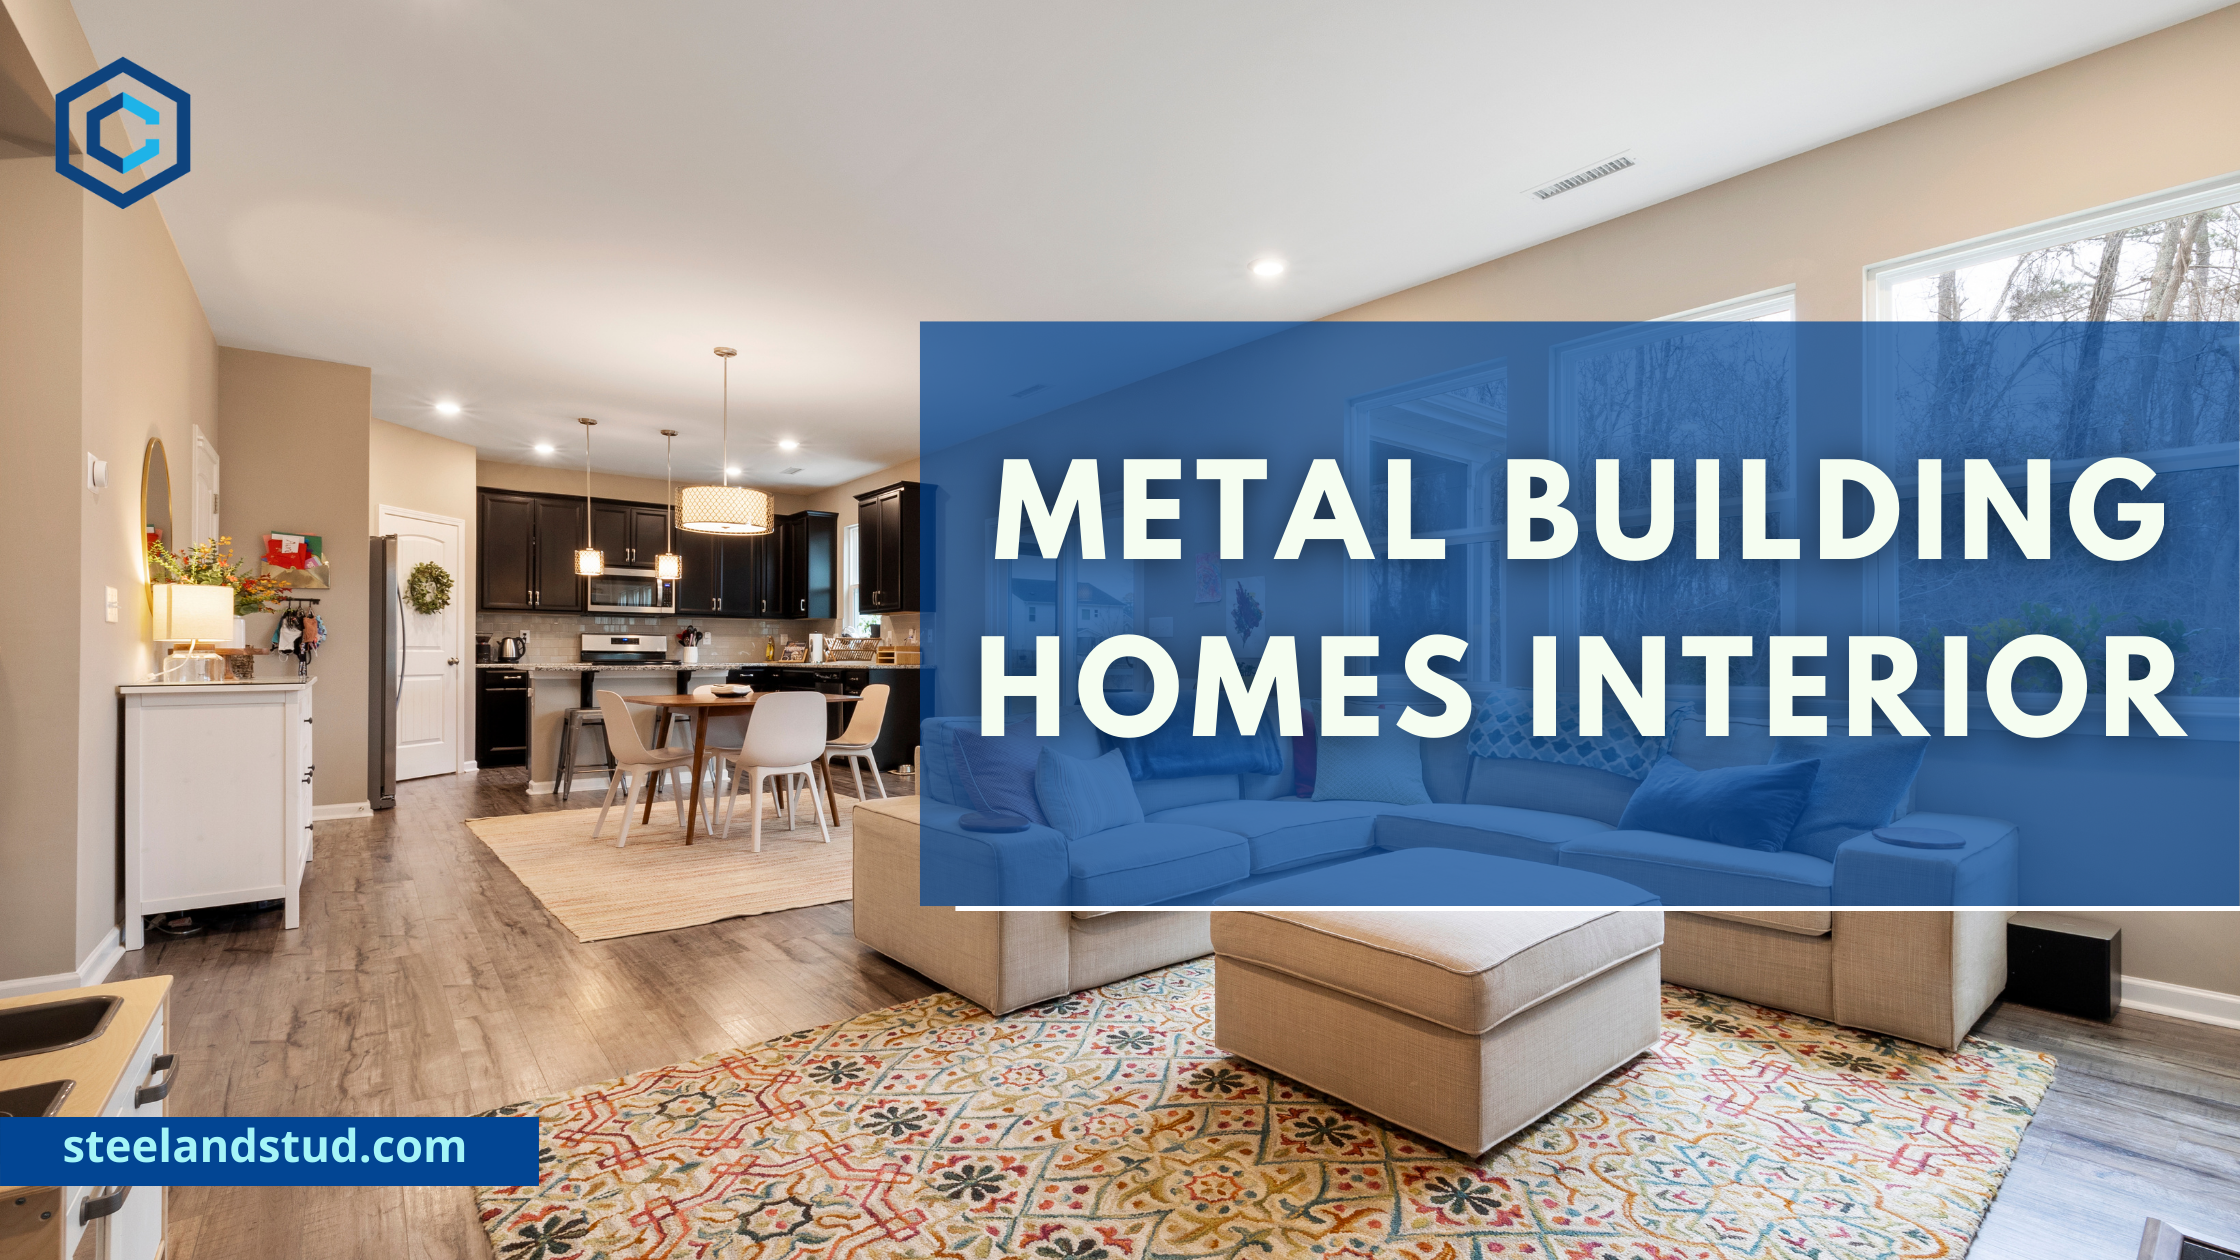 Metal Building Homes Interior